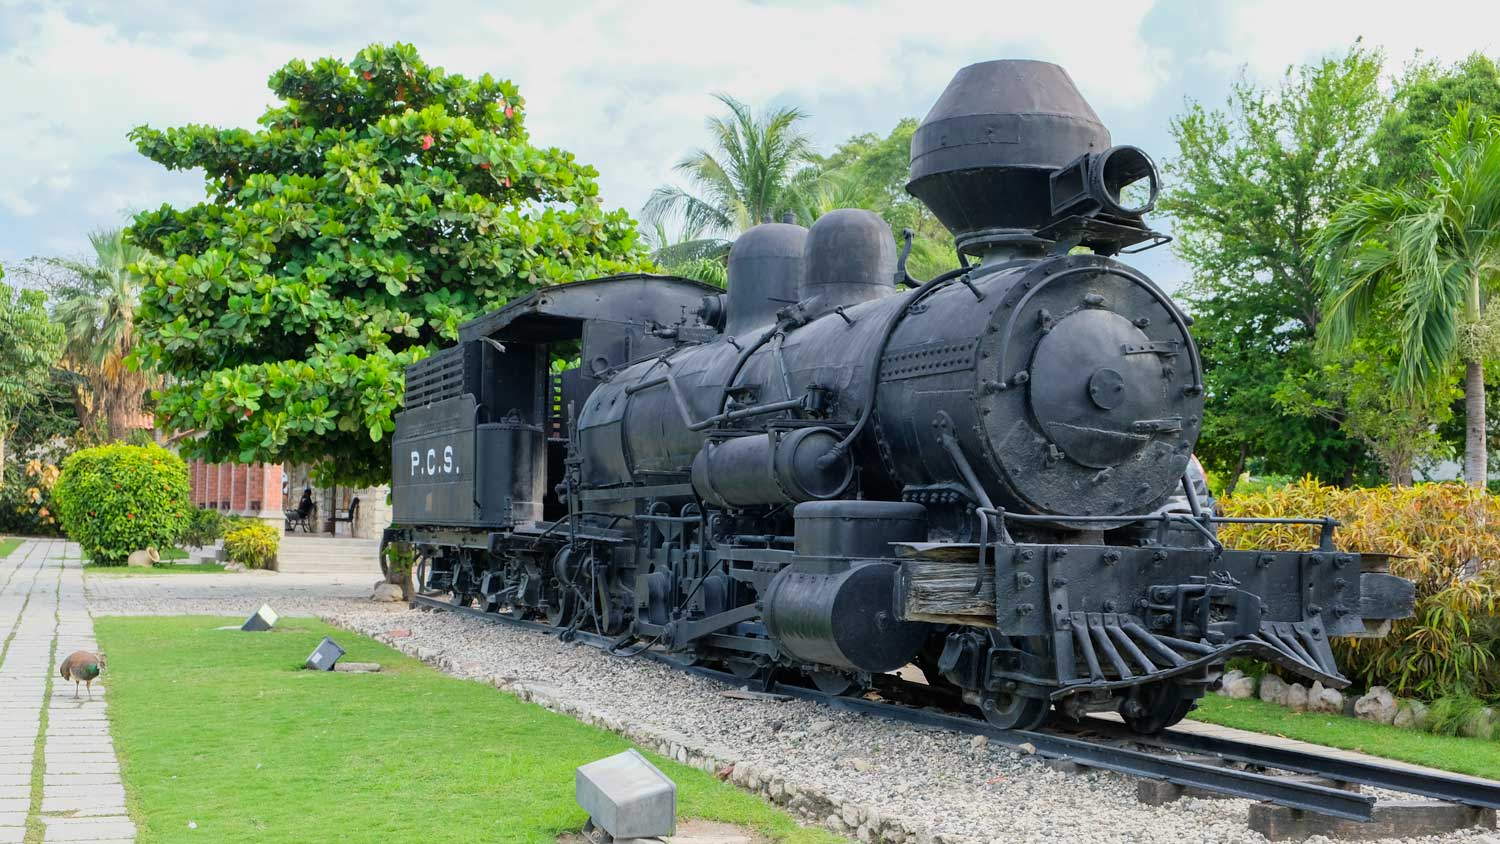 Old steam train on display at Parc Historique de la Canne à Sucre, Haiti